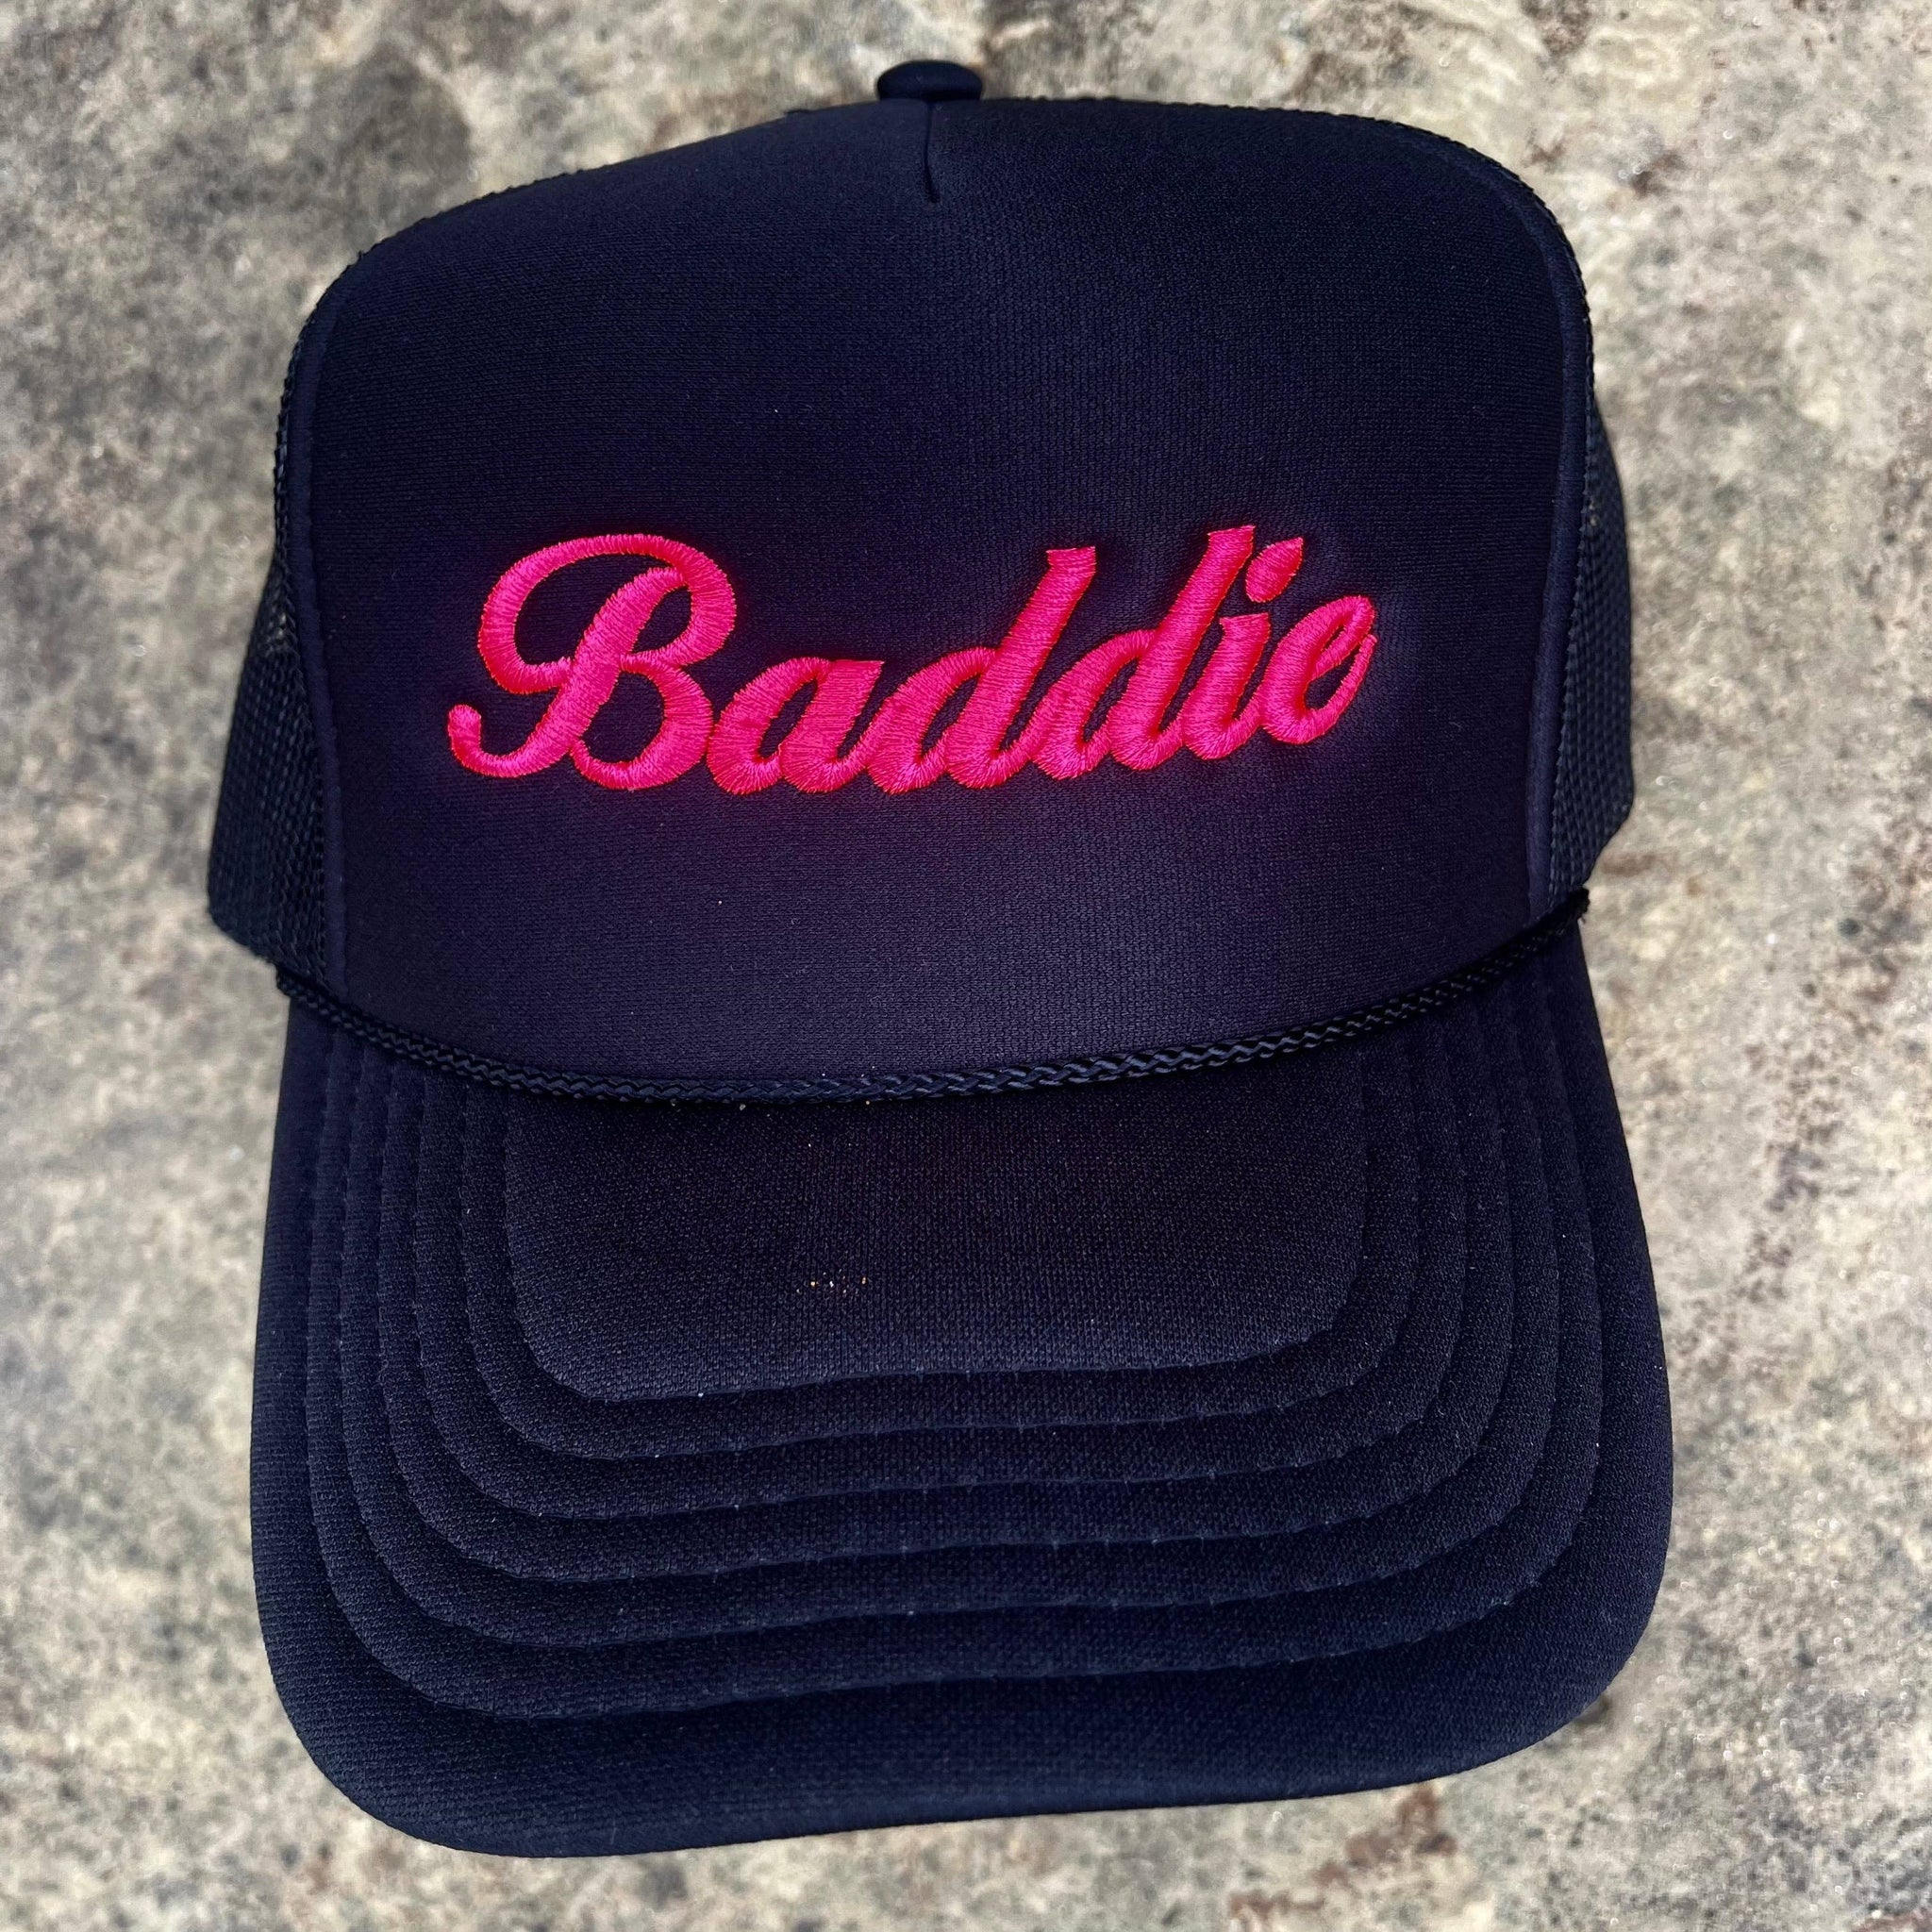 Baddie Trucker Hat | Black